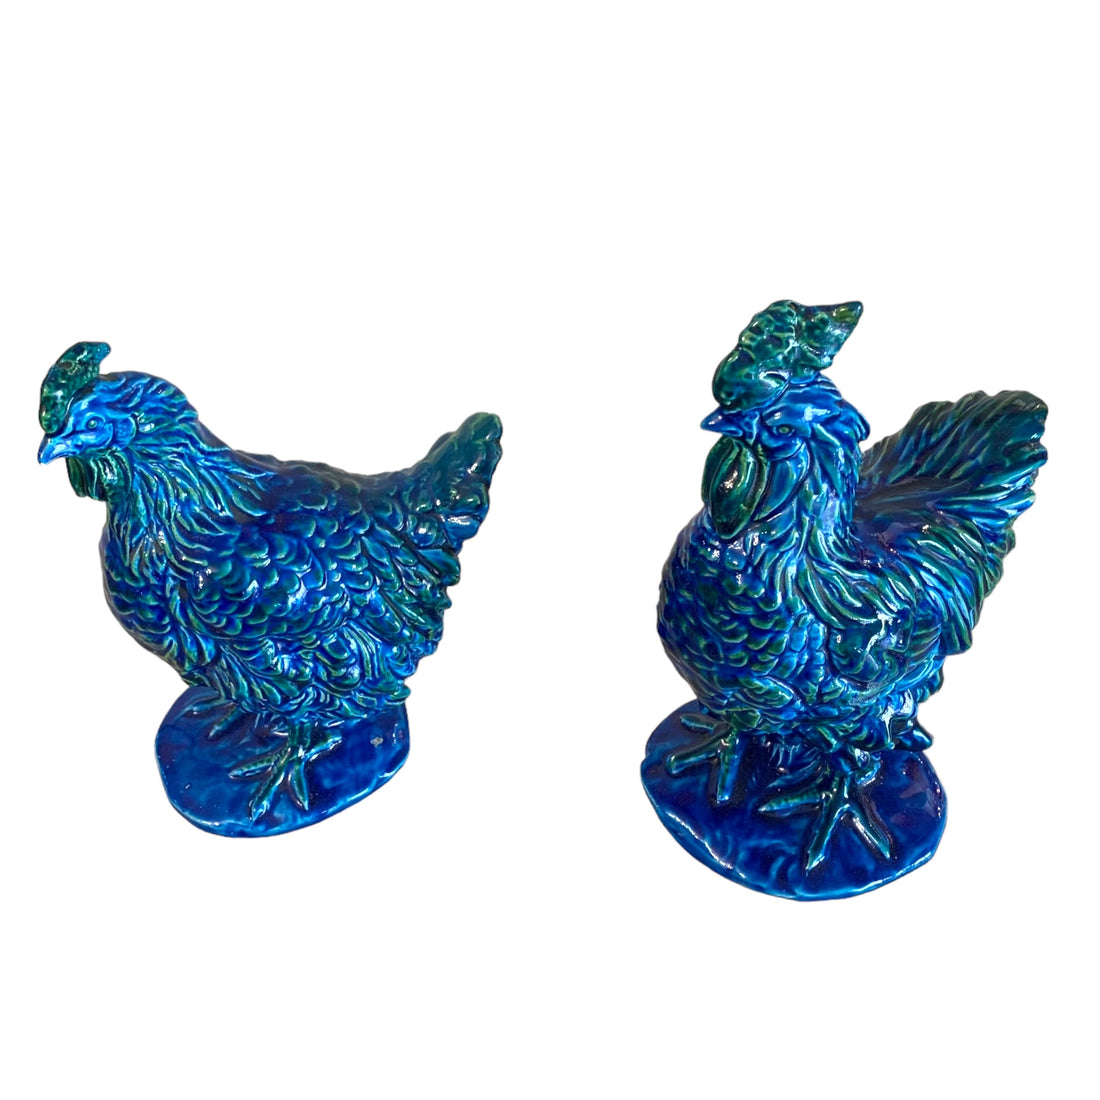 Gallo y gallina china azul imperial. SXIX